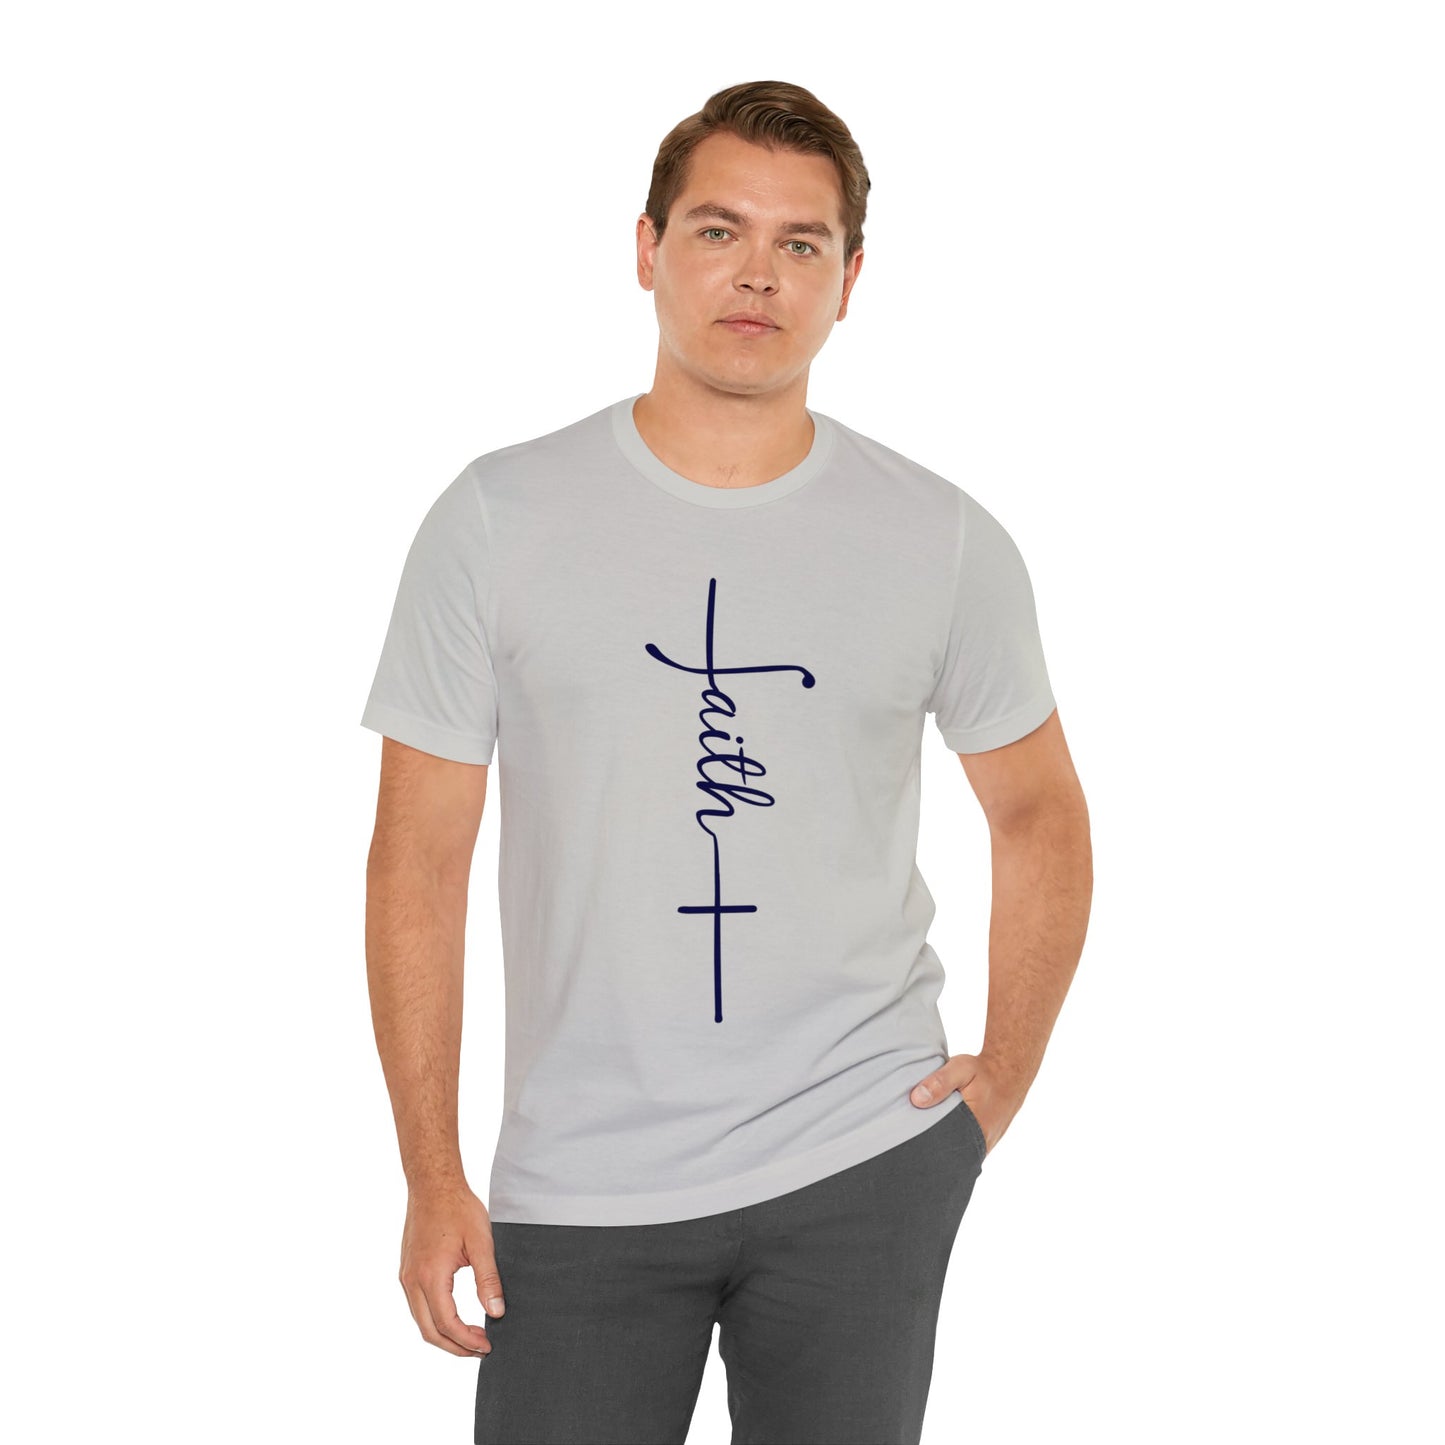 Cursive Faith with Cross Tee - Navy Font